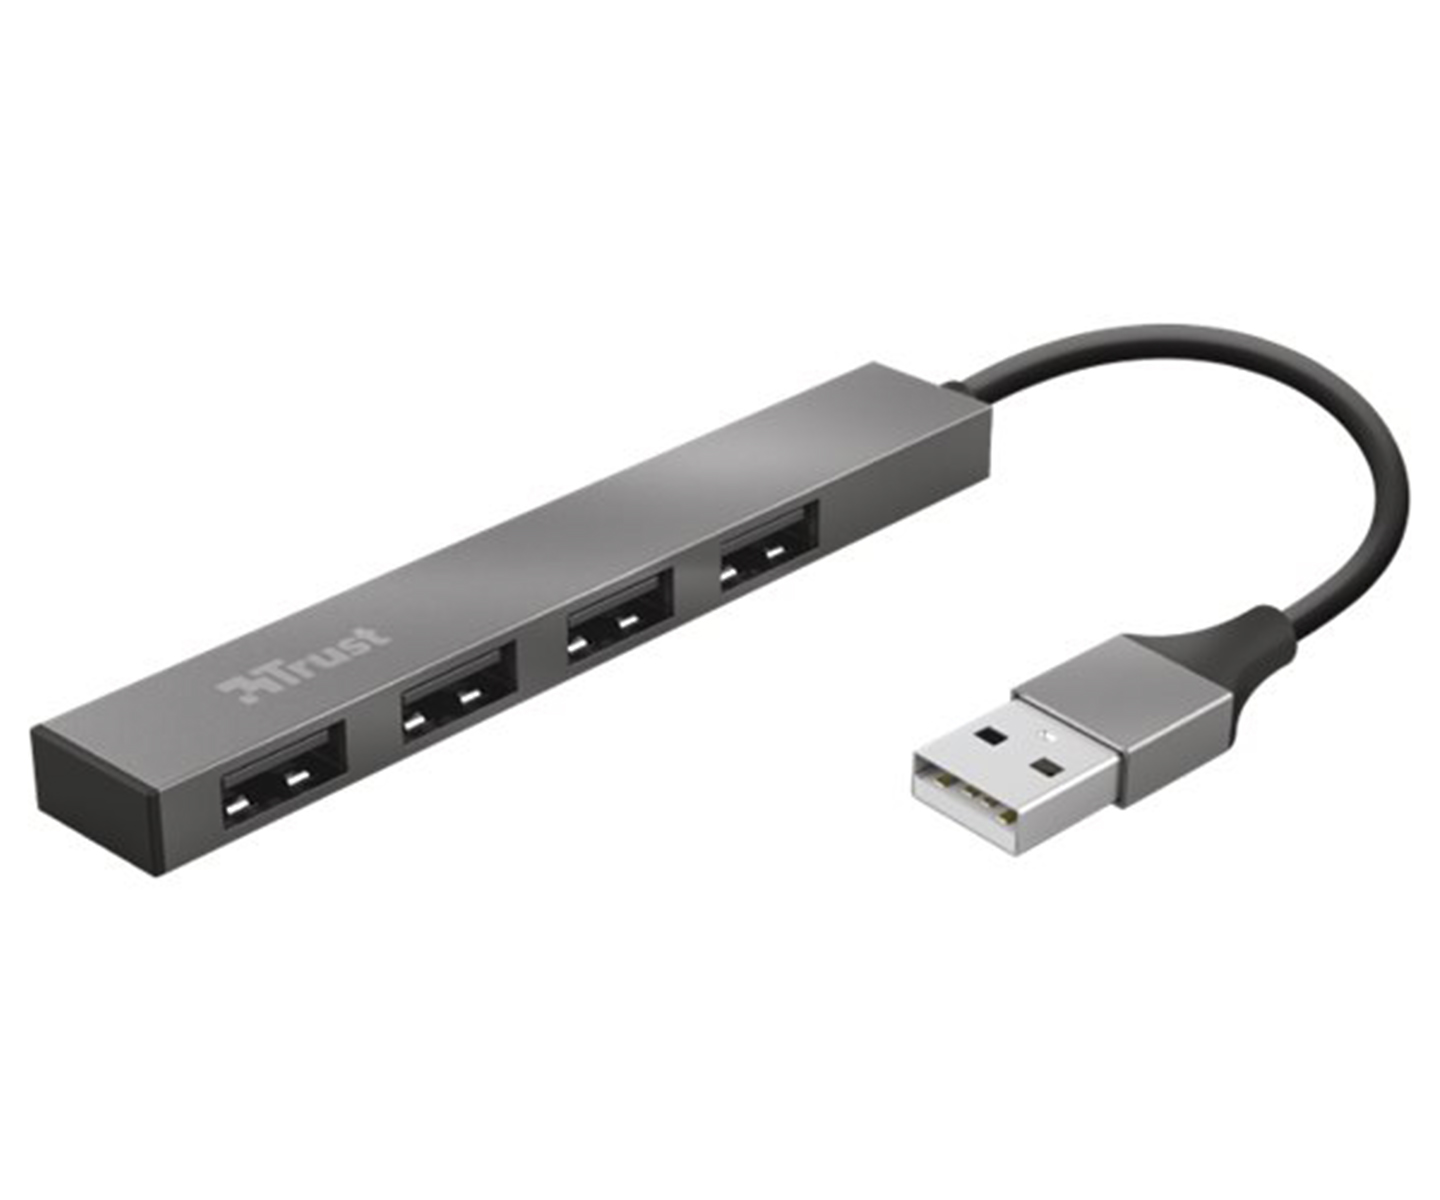 Trust Halyx Aluminium 4-Port Mini USB Hub Hub 4 porte USB